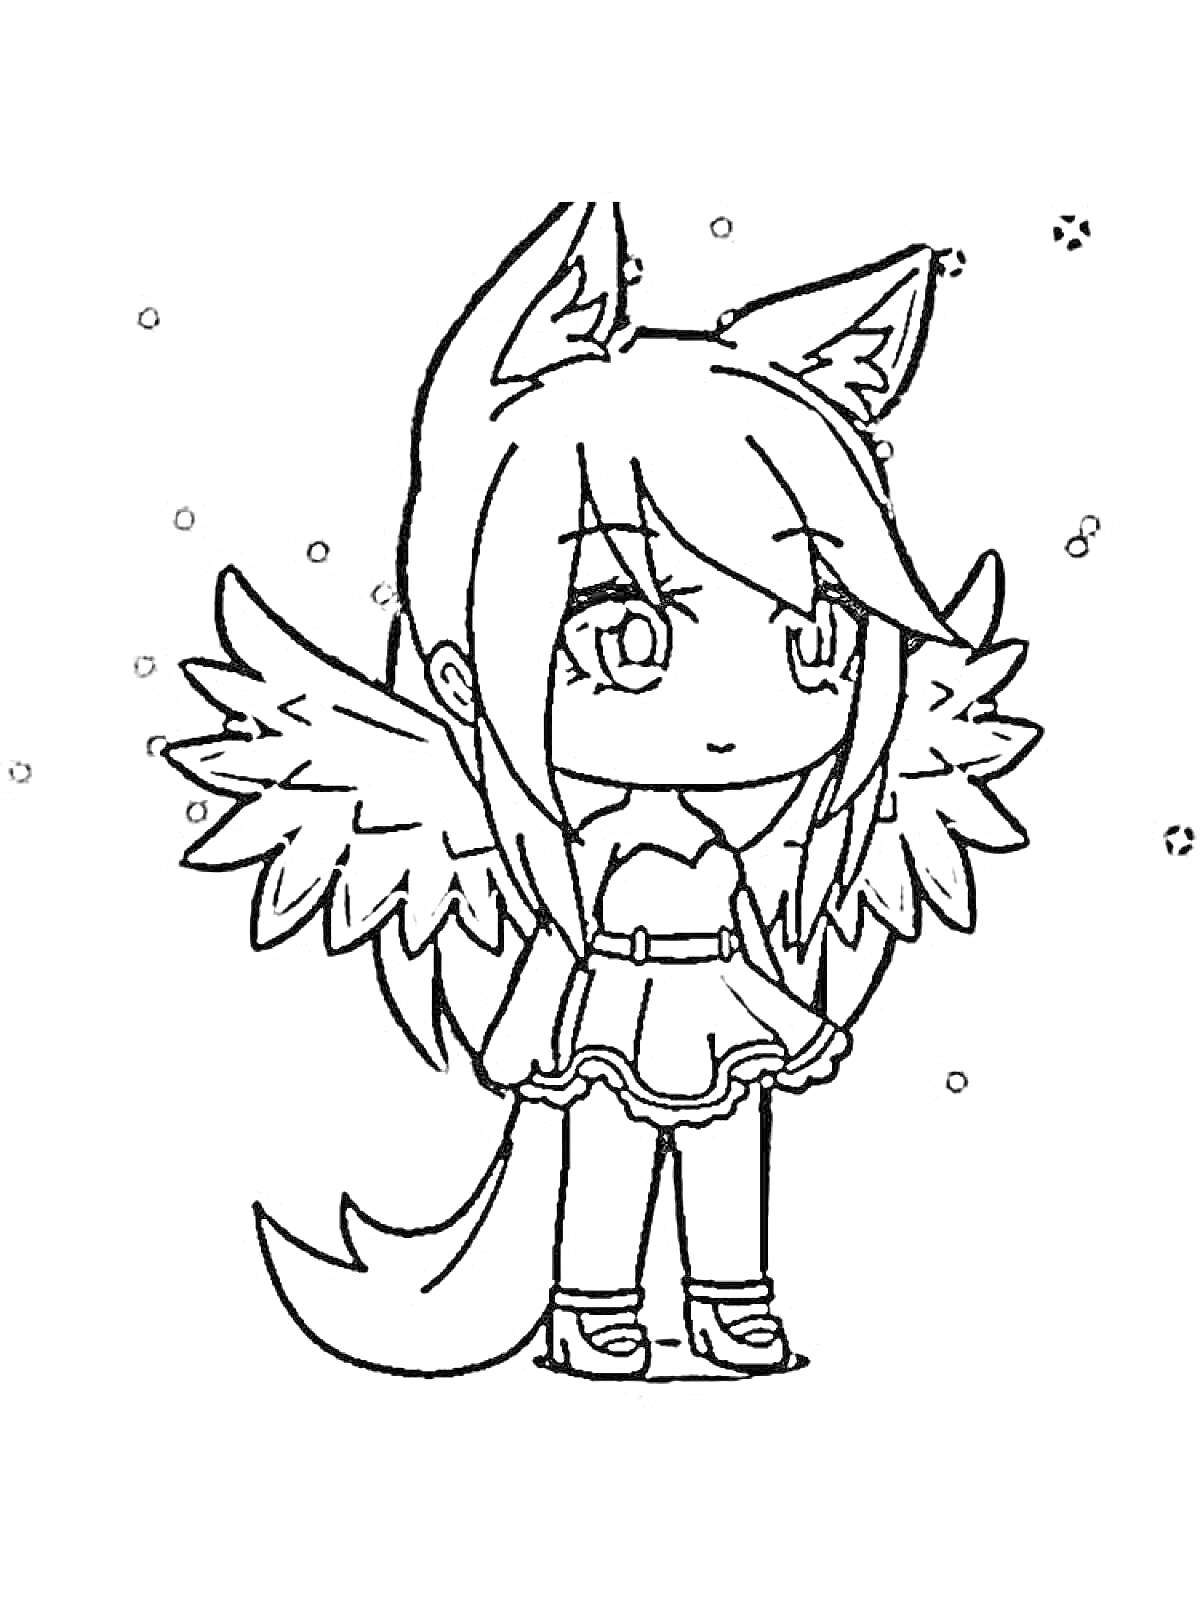 Девочка с ушками, крыльями и хвостом на фоне снега